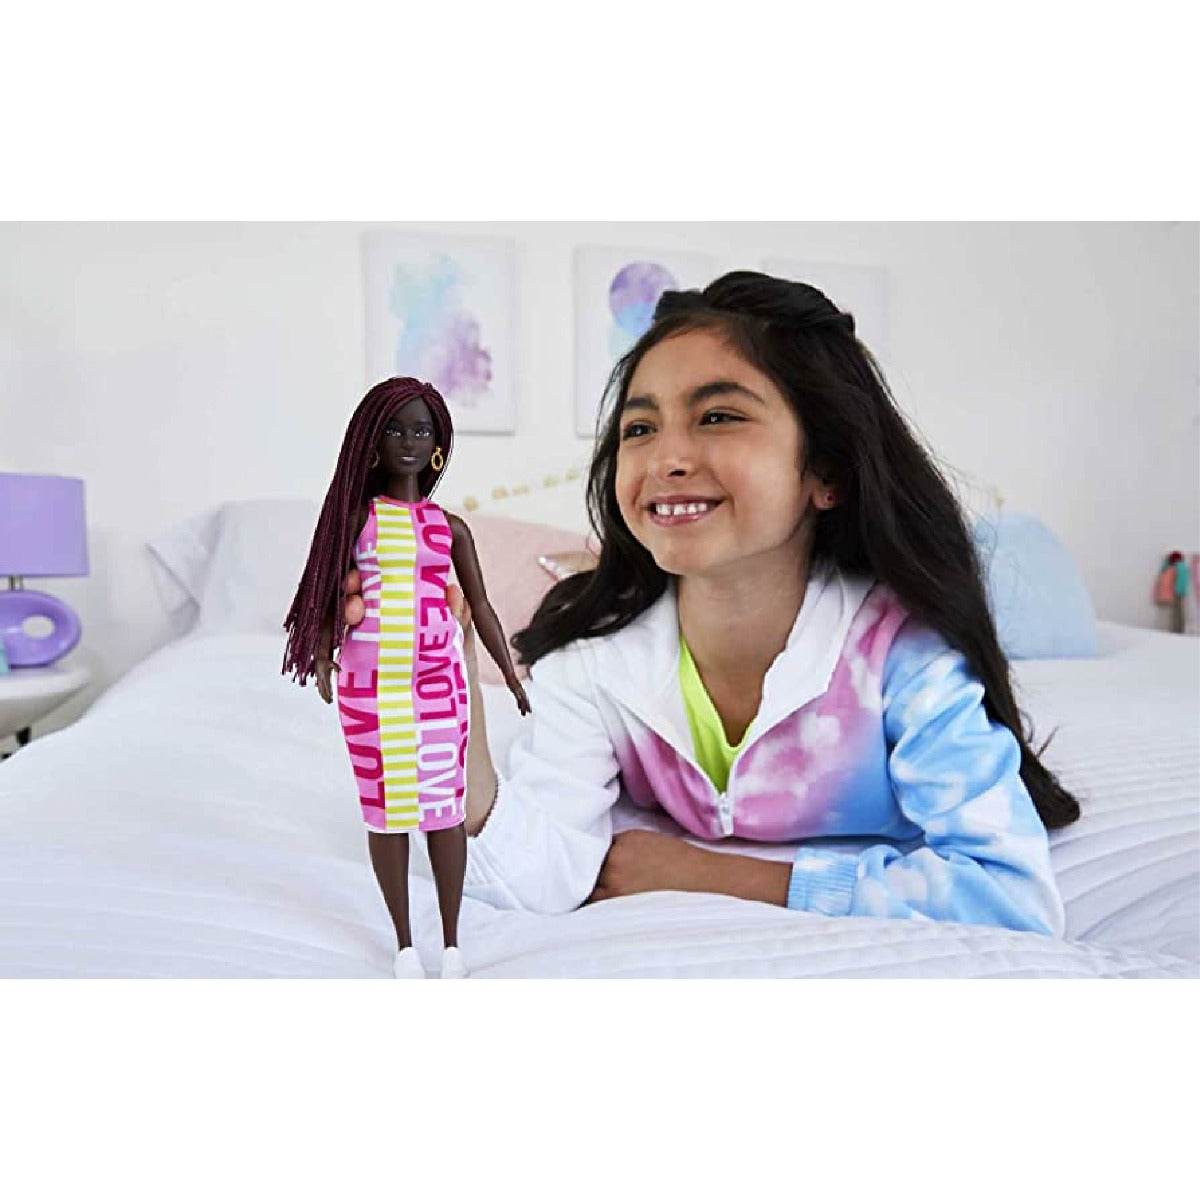 Búp bê thời trang Barbie - Curvy, Love Dress, Crimson Braids BARBIE FBR37